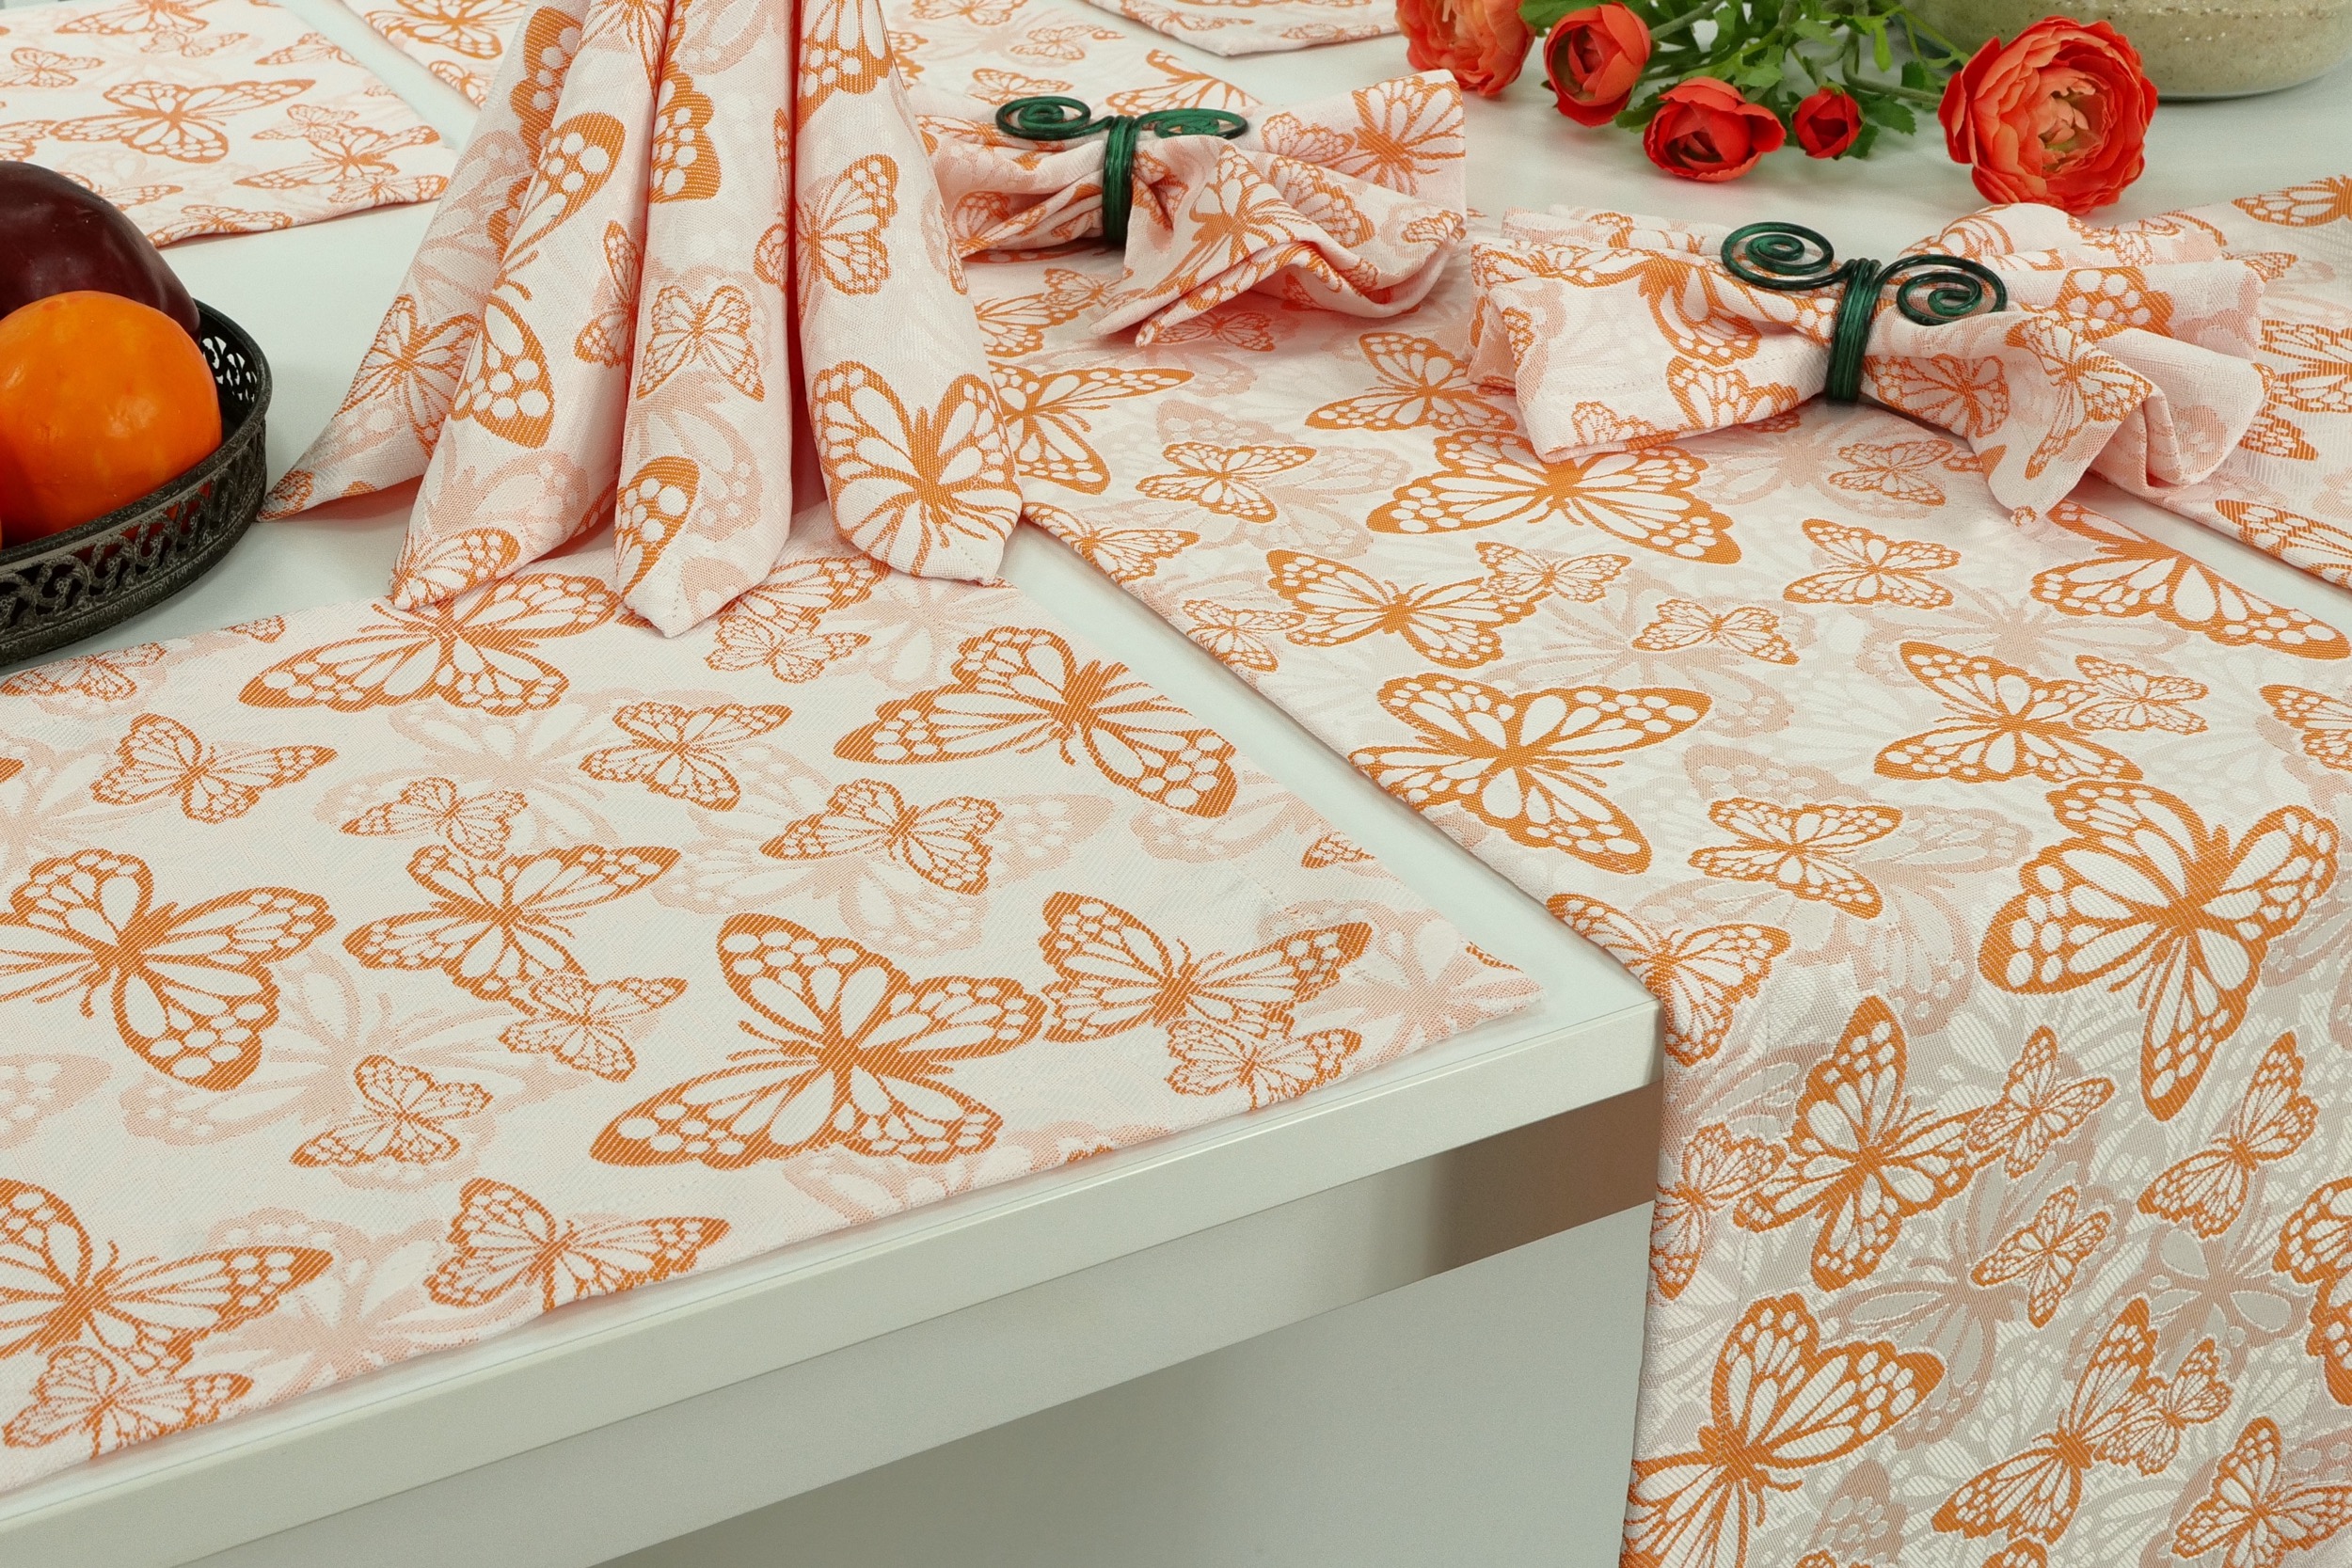 Fleckgeschützte Tischläufer Weiß Orange Muster Springtime Breite 25 cm